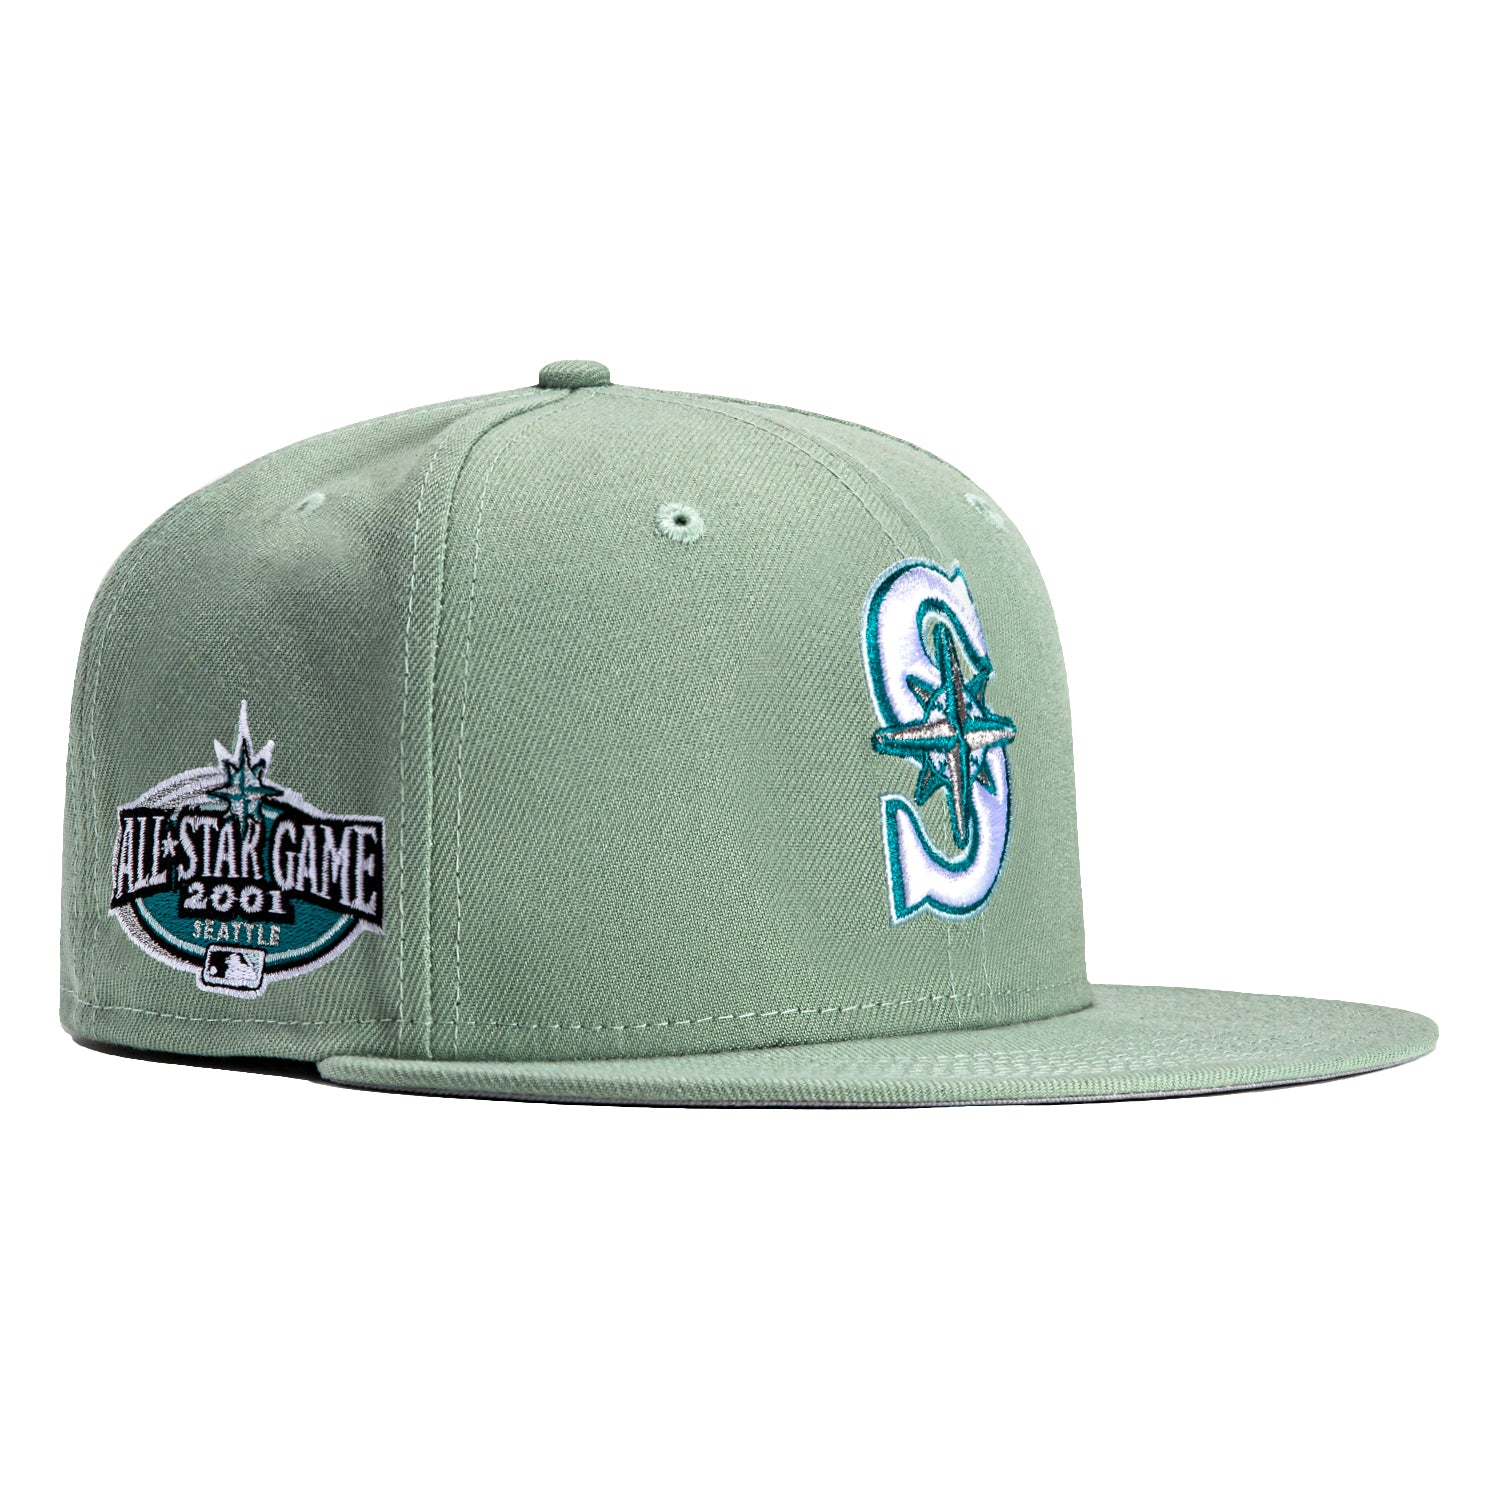 Tacoma Rainiers Seattle Mariners Minor League Cap Hat Adjustable